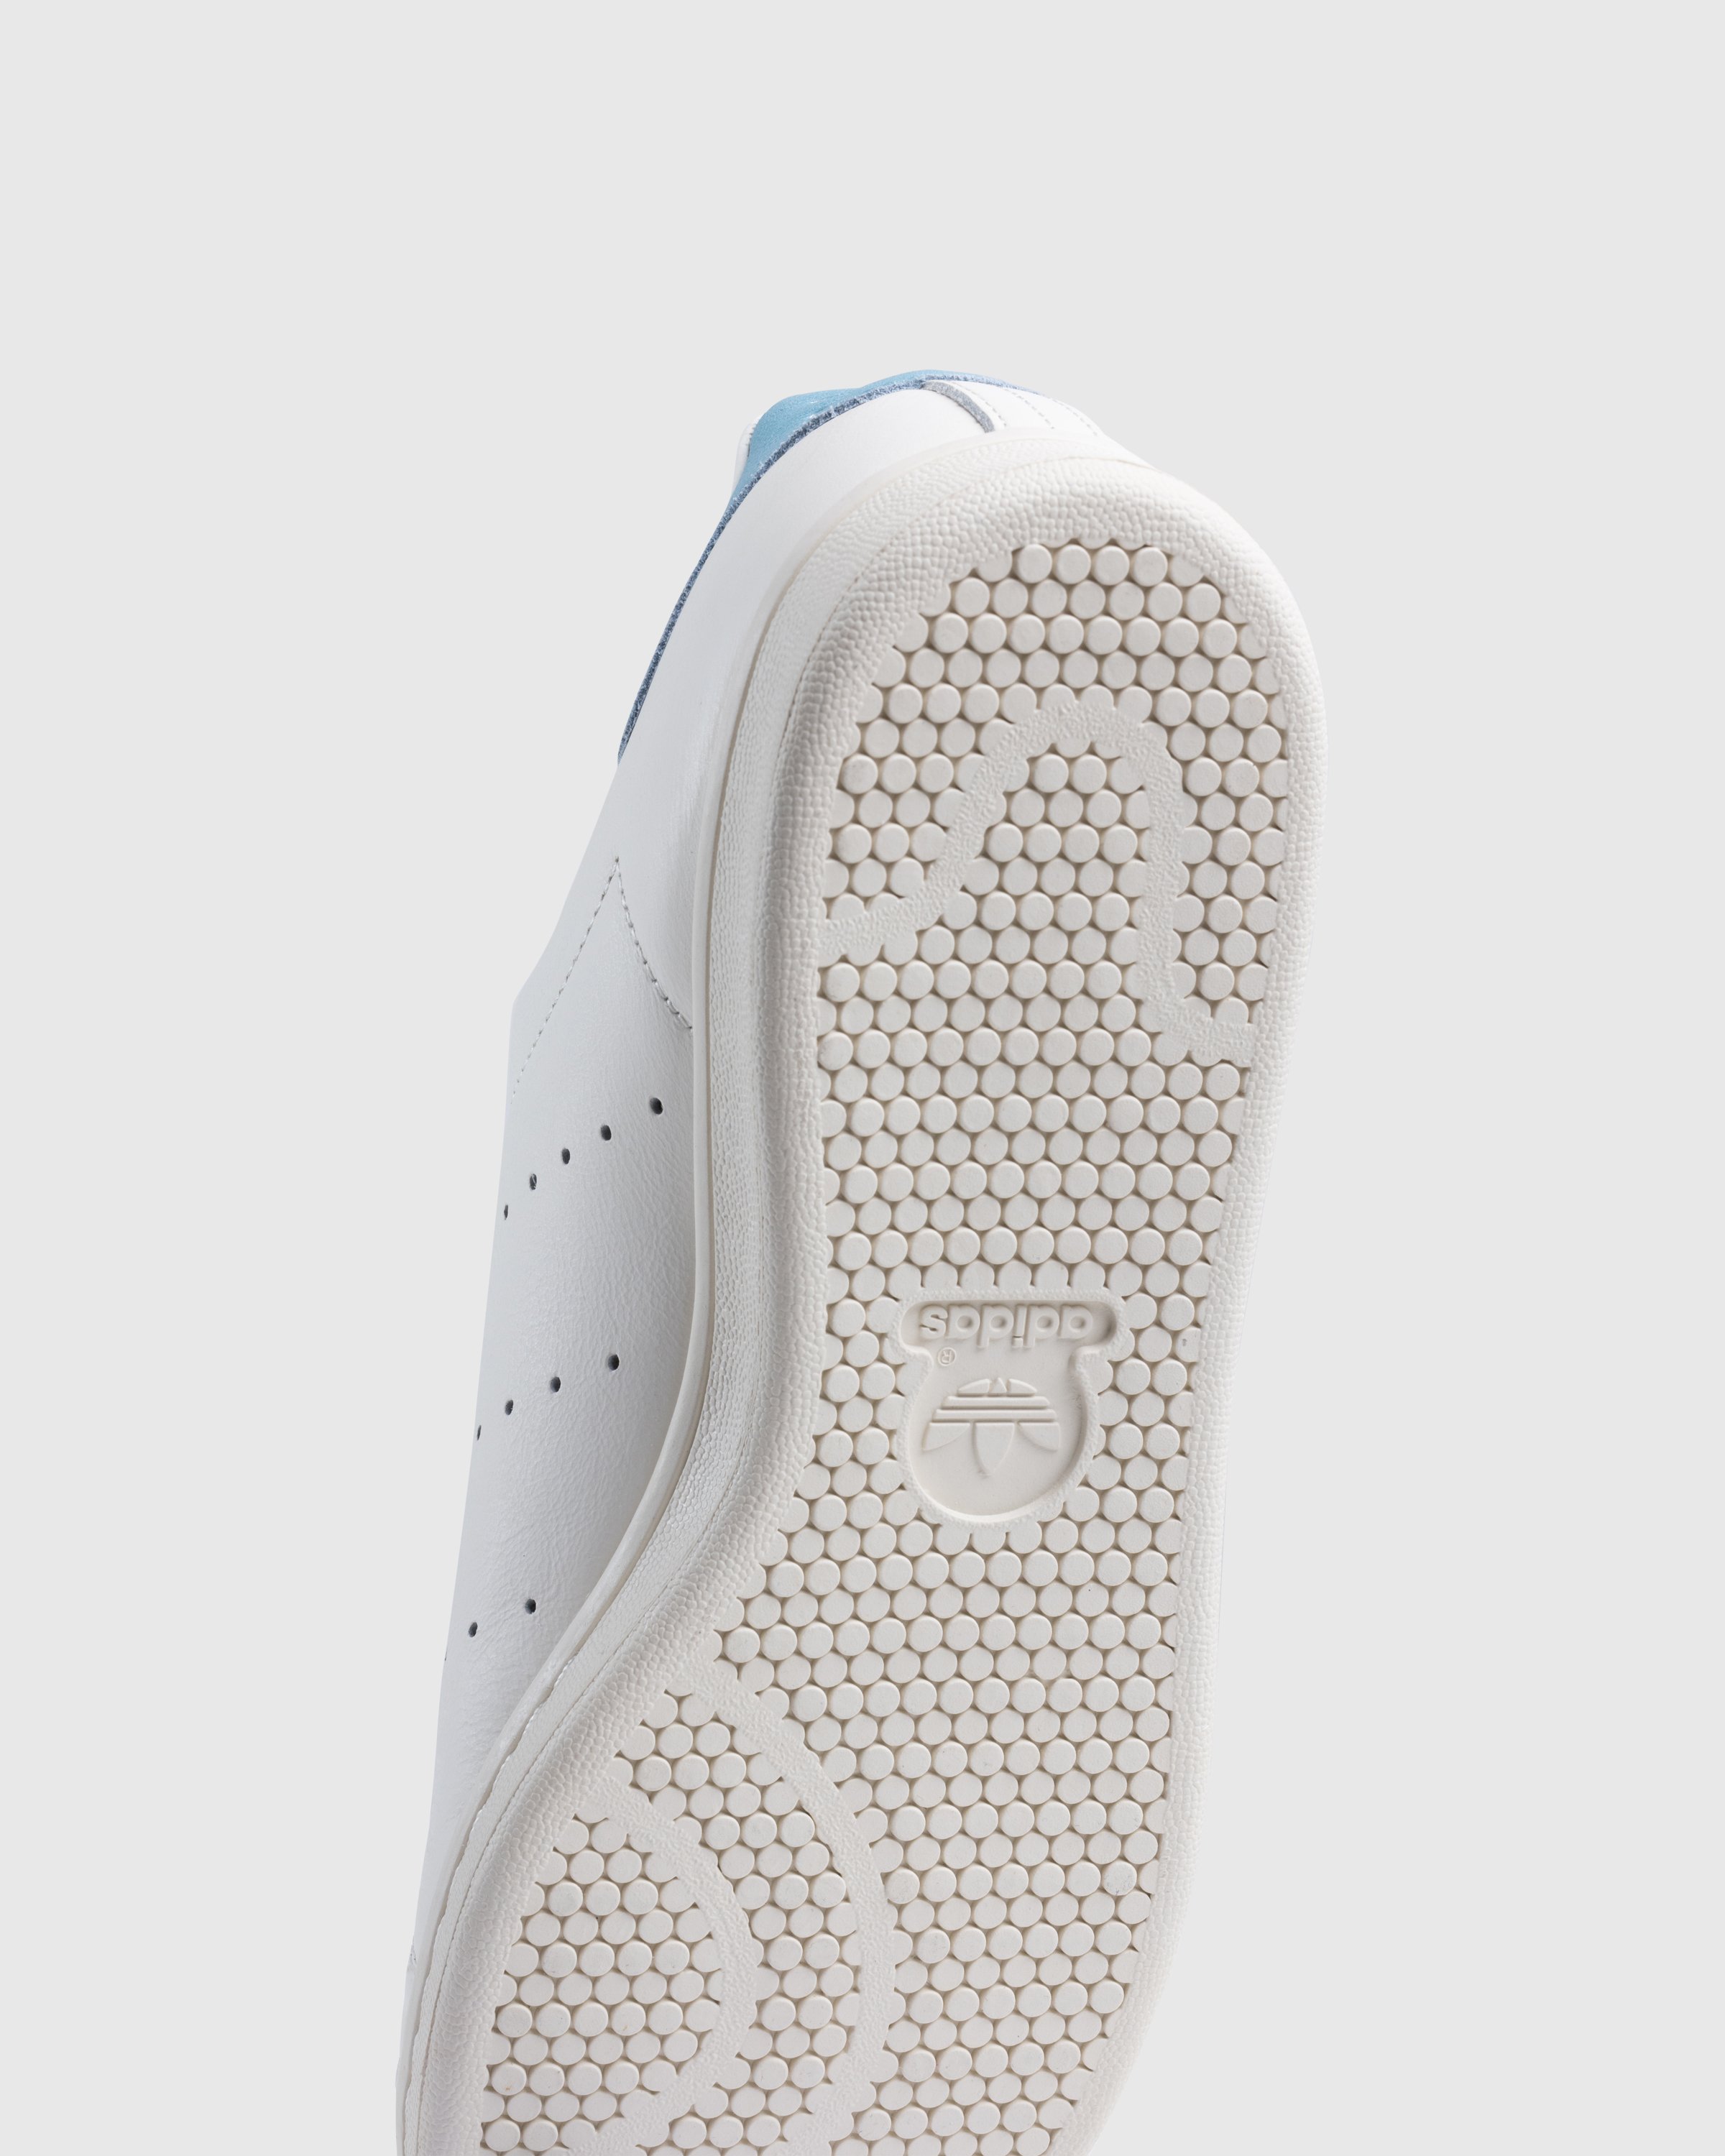 Adidas - Stan Smith White Blue - Footwear - White - Image 6